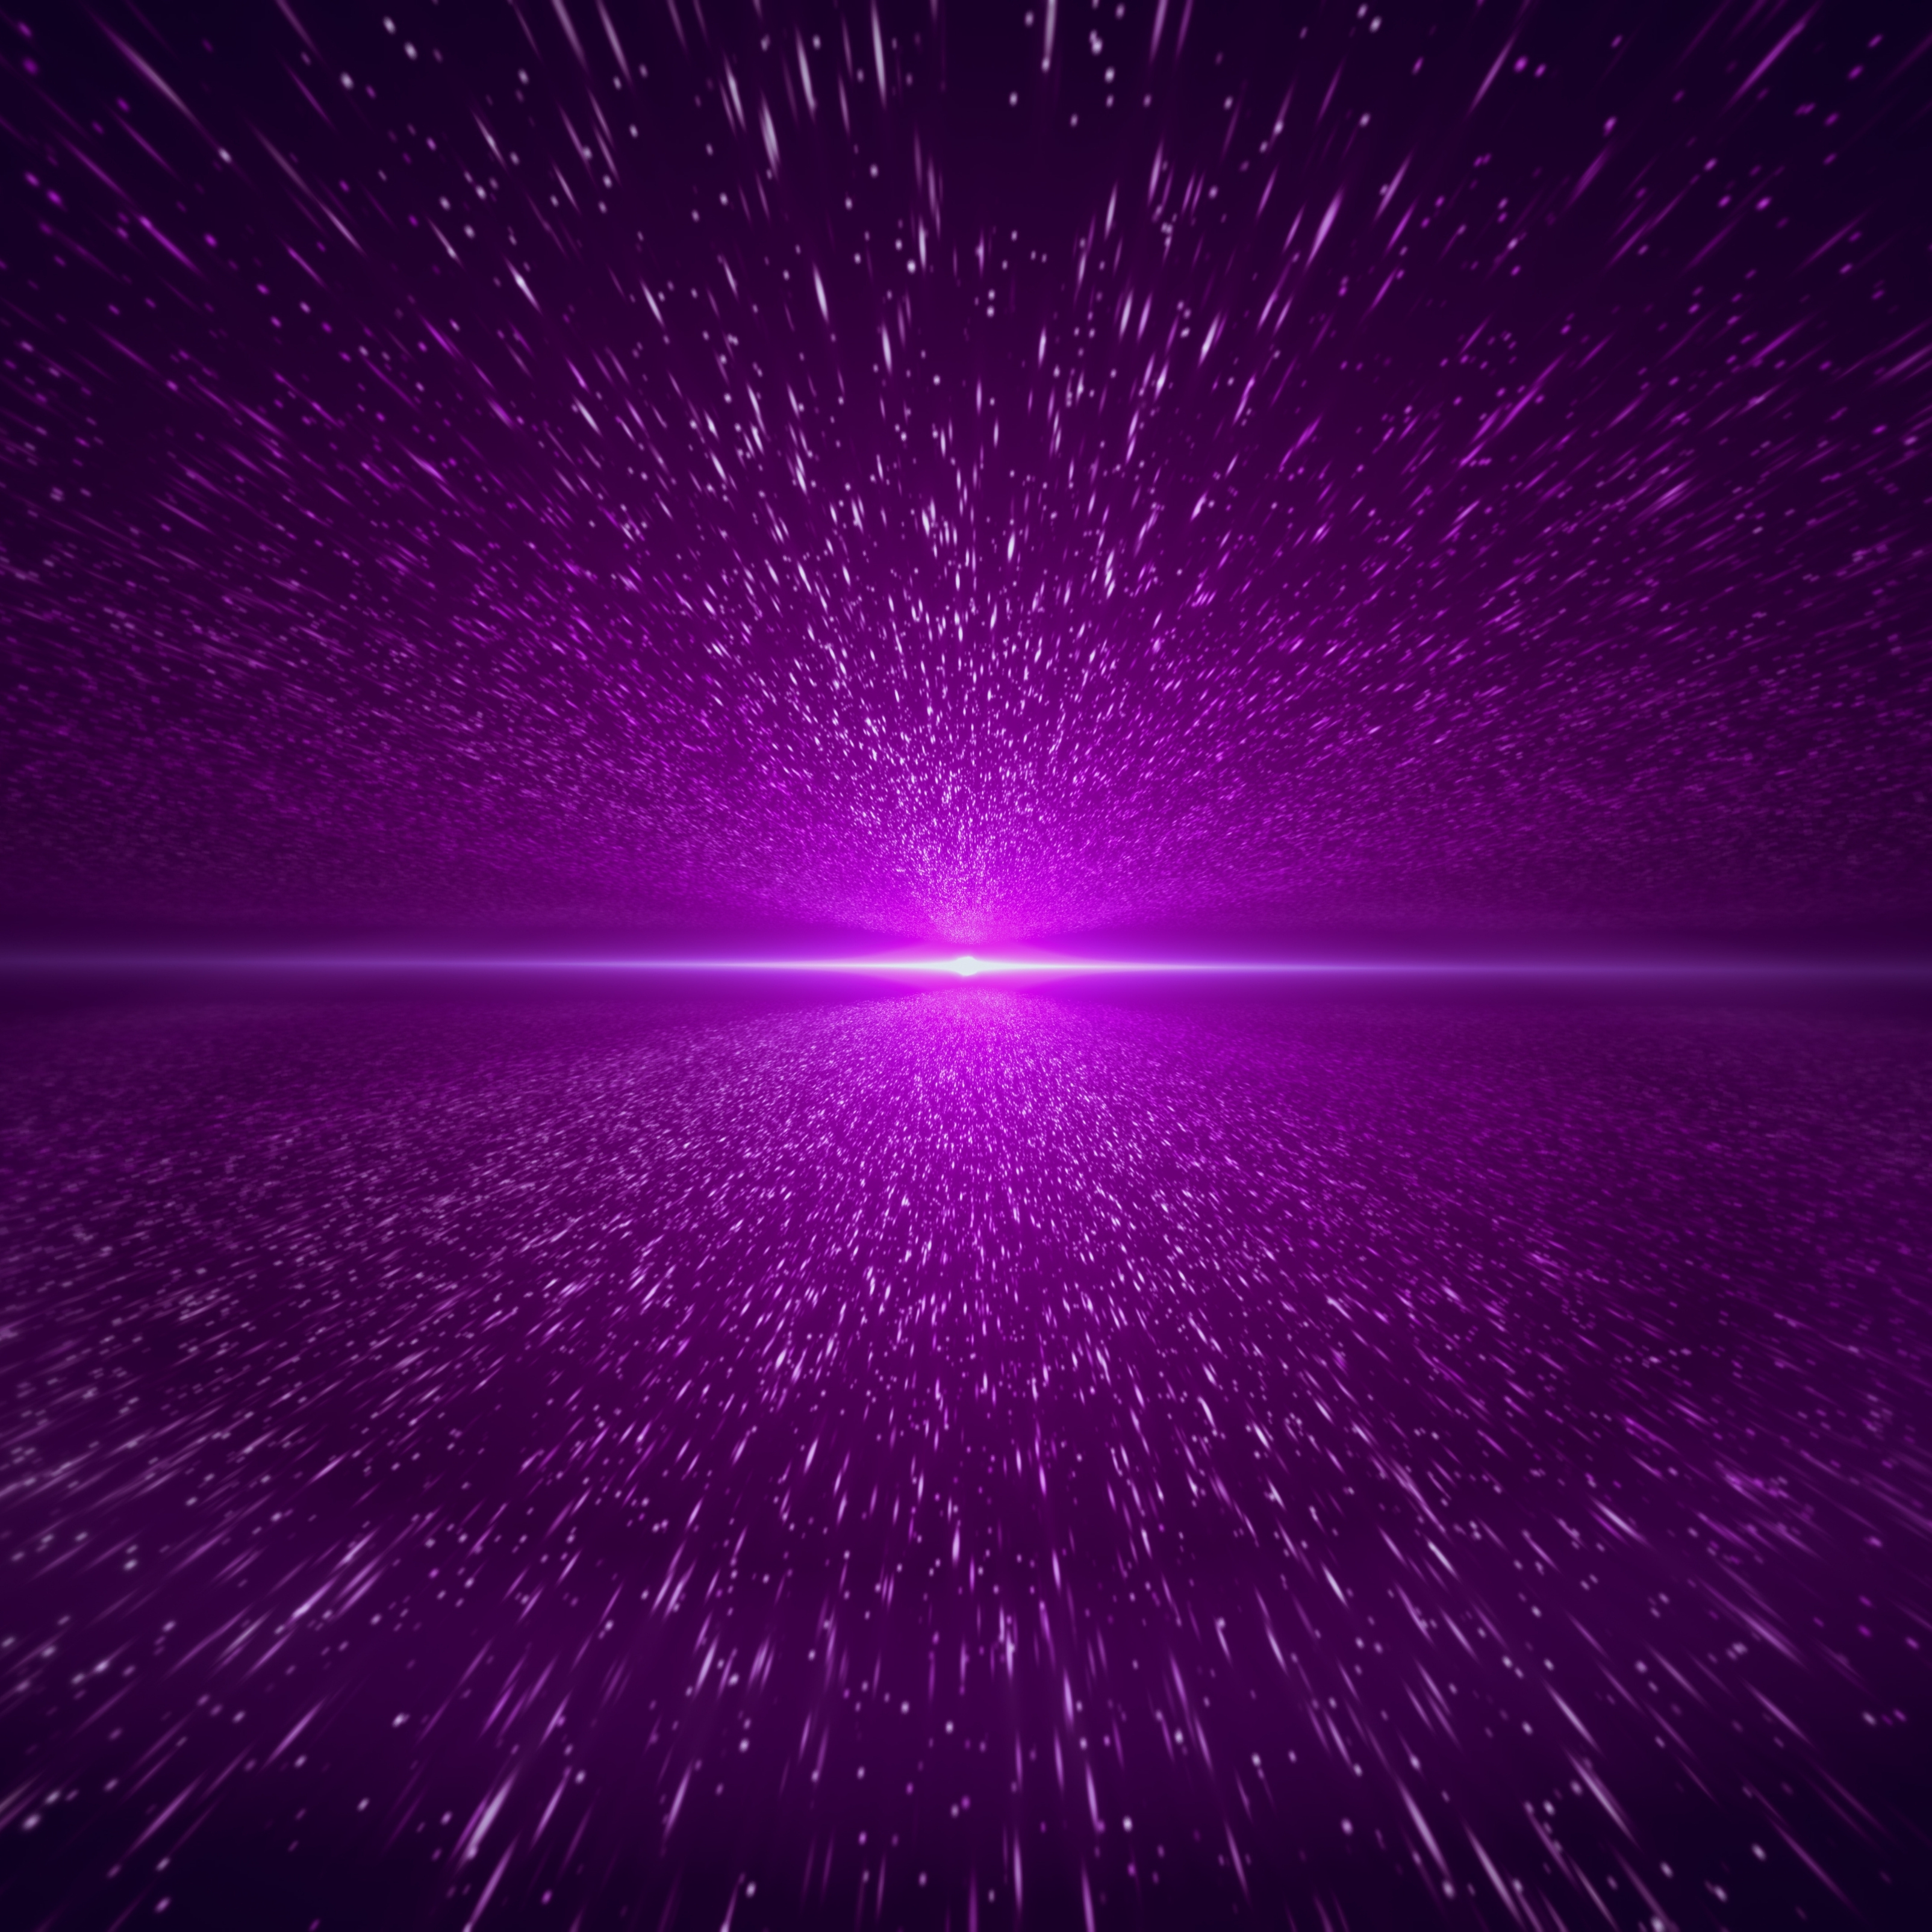 iPad Wallpapers Purple Light Beam Space Digital Galaxy iPad Wallpaper 3208x3208 px